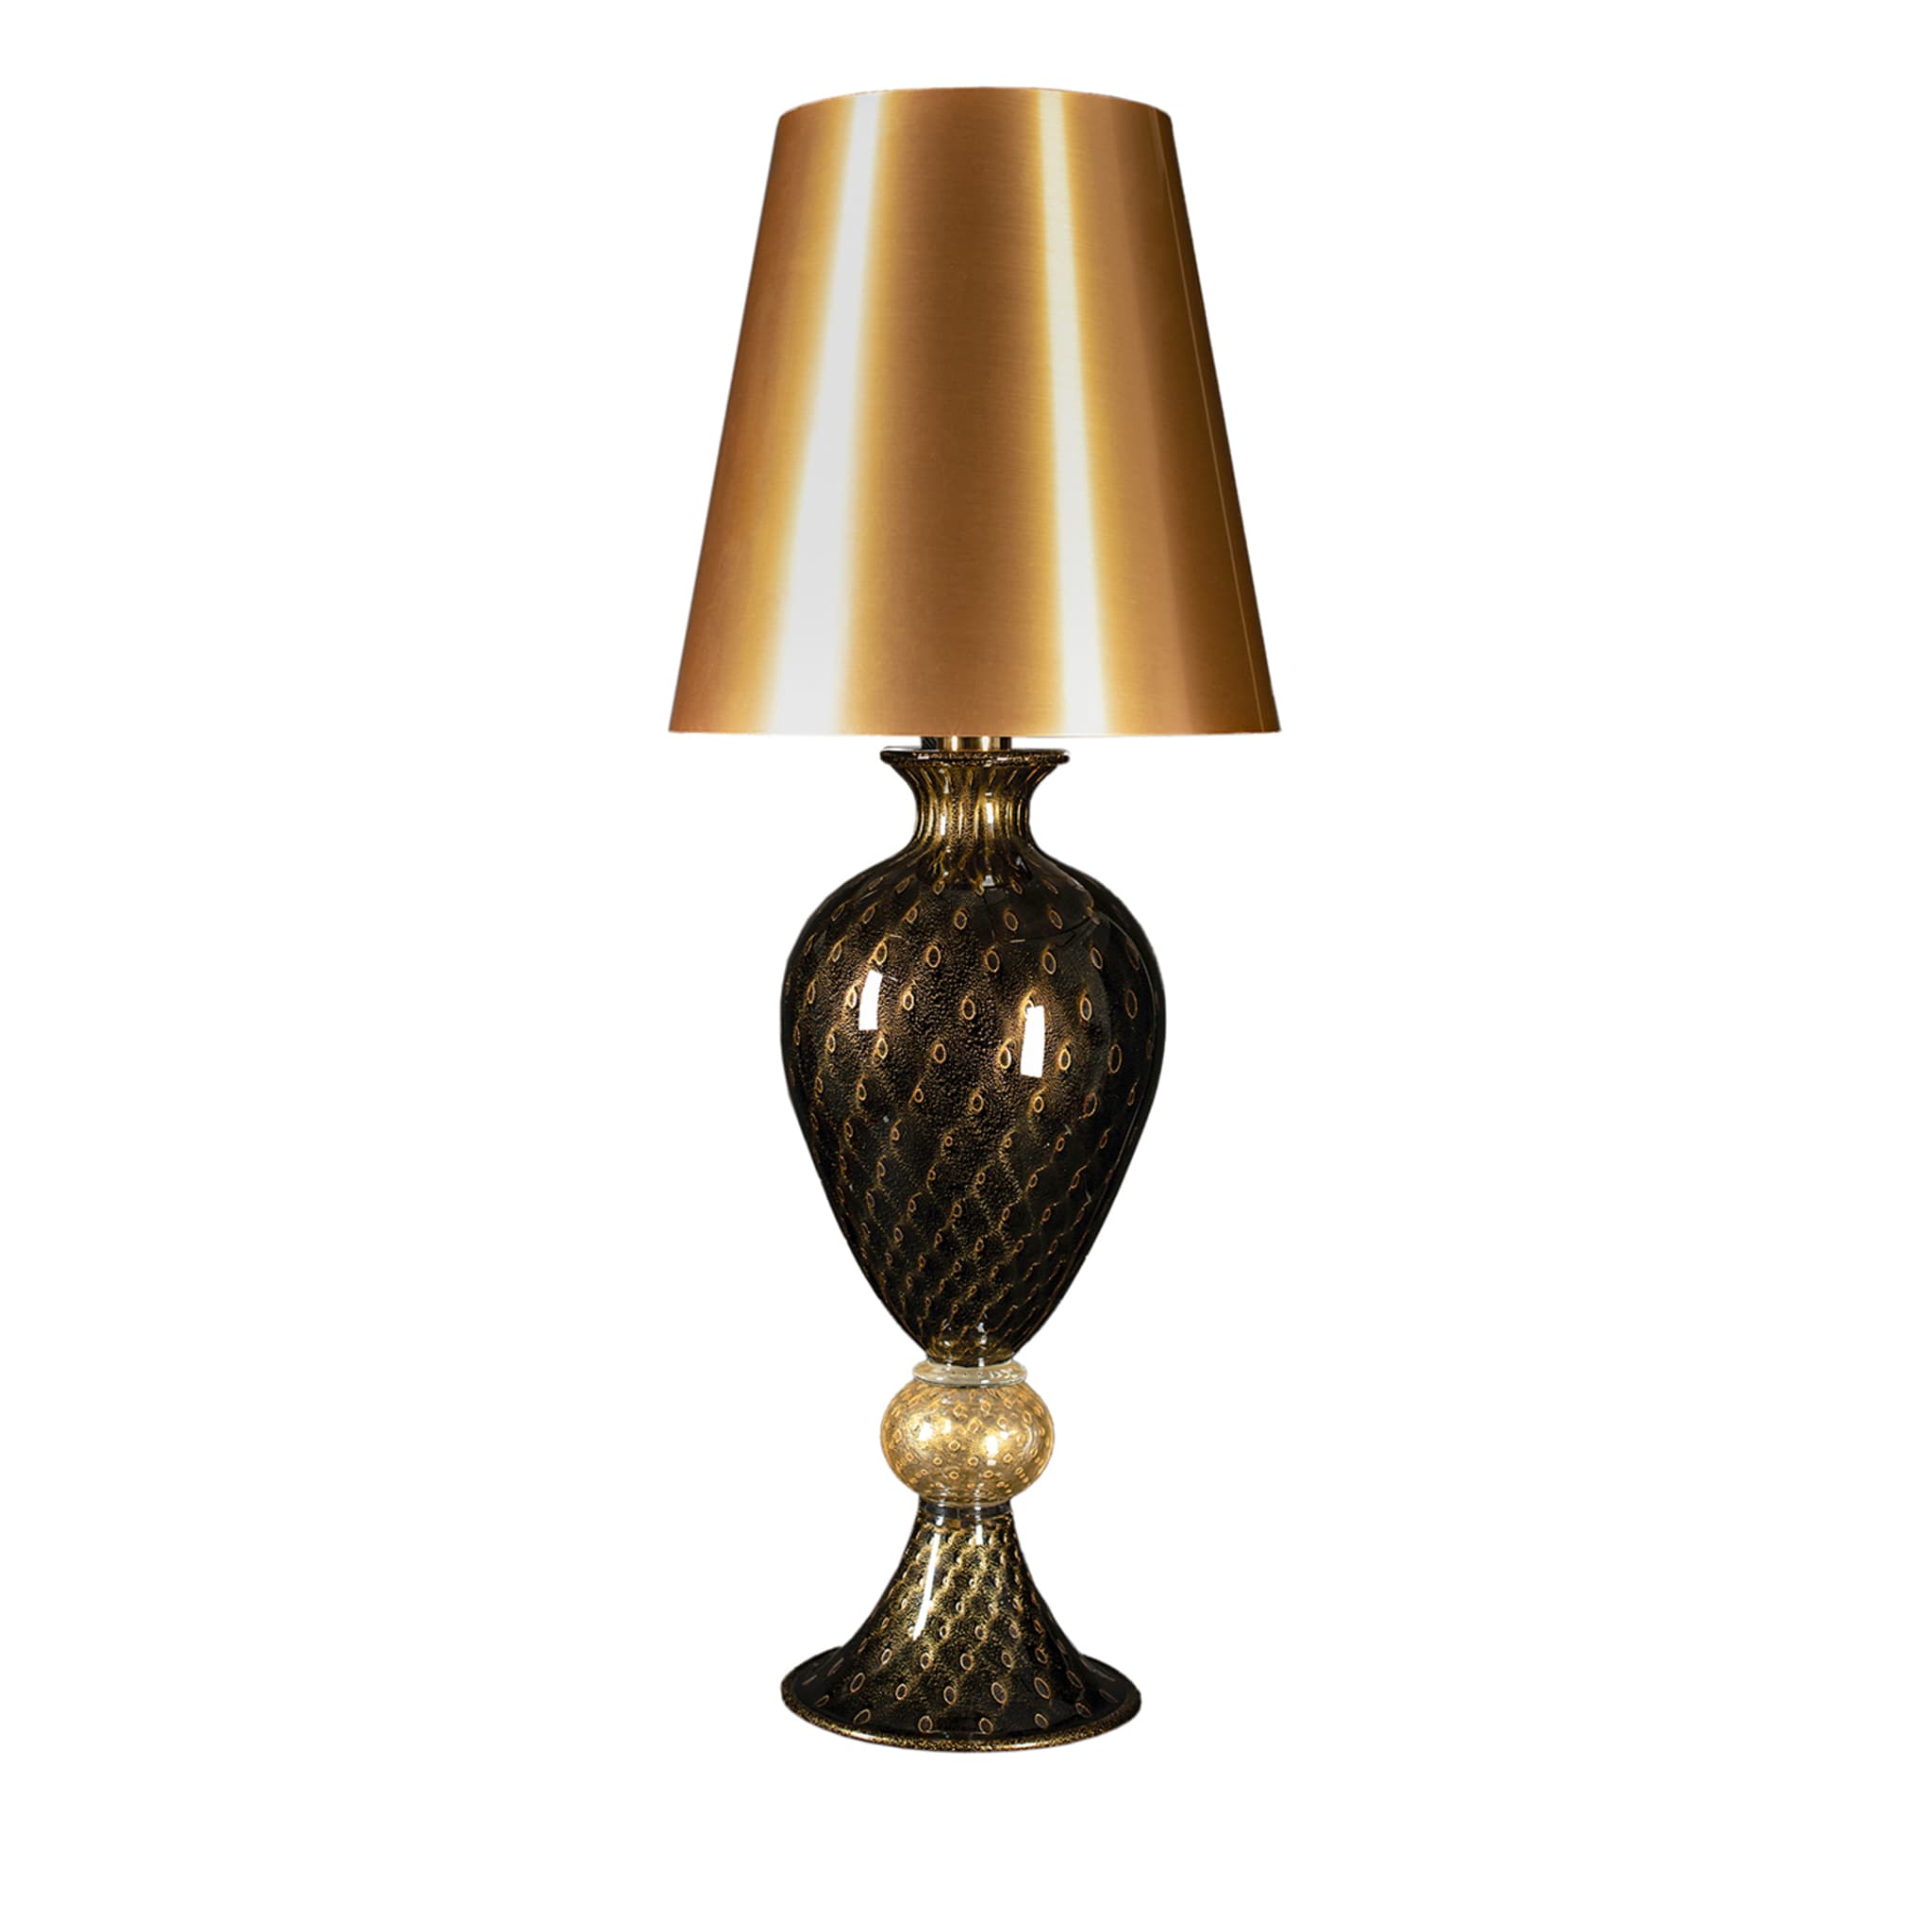 Lampada da tavolo alta nera e dorata #2 Officine di Murano 1295